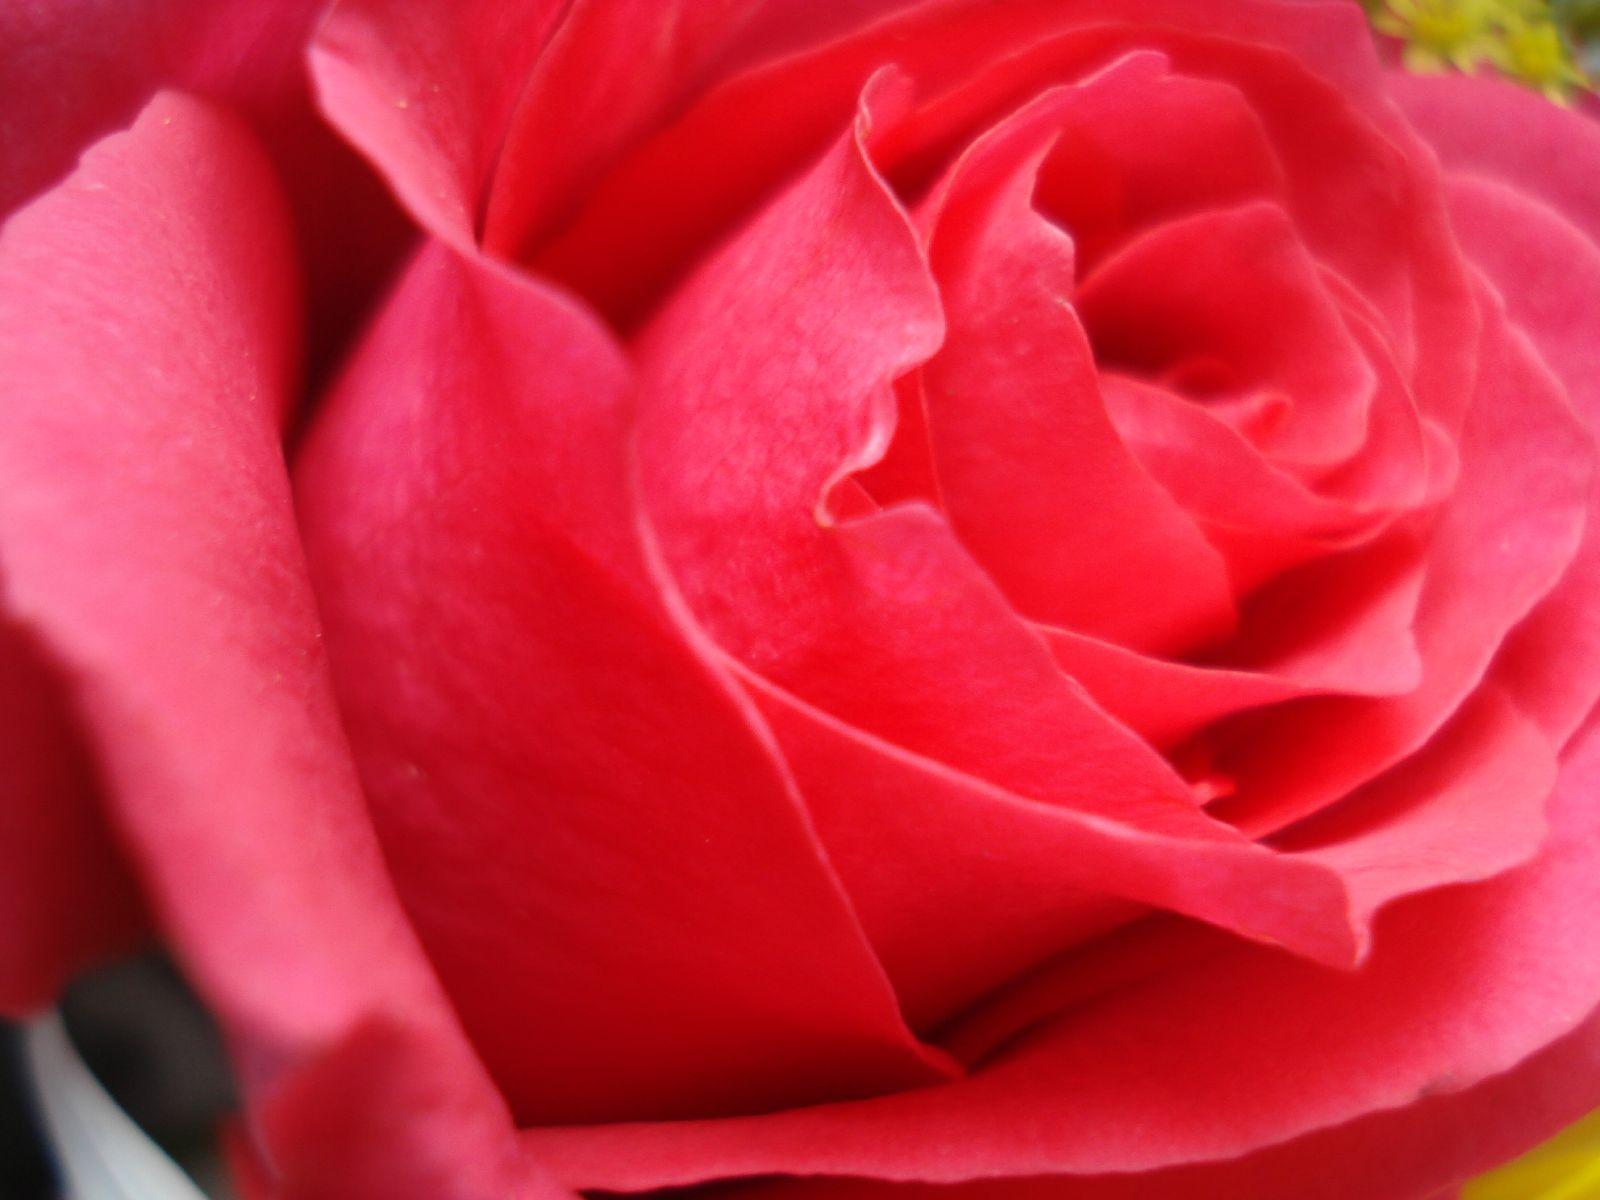 Rose Flower Wallpaper For Desktop